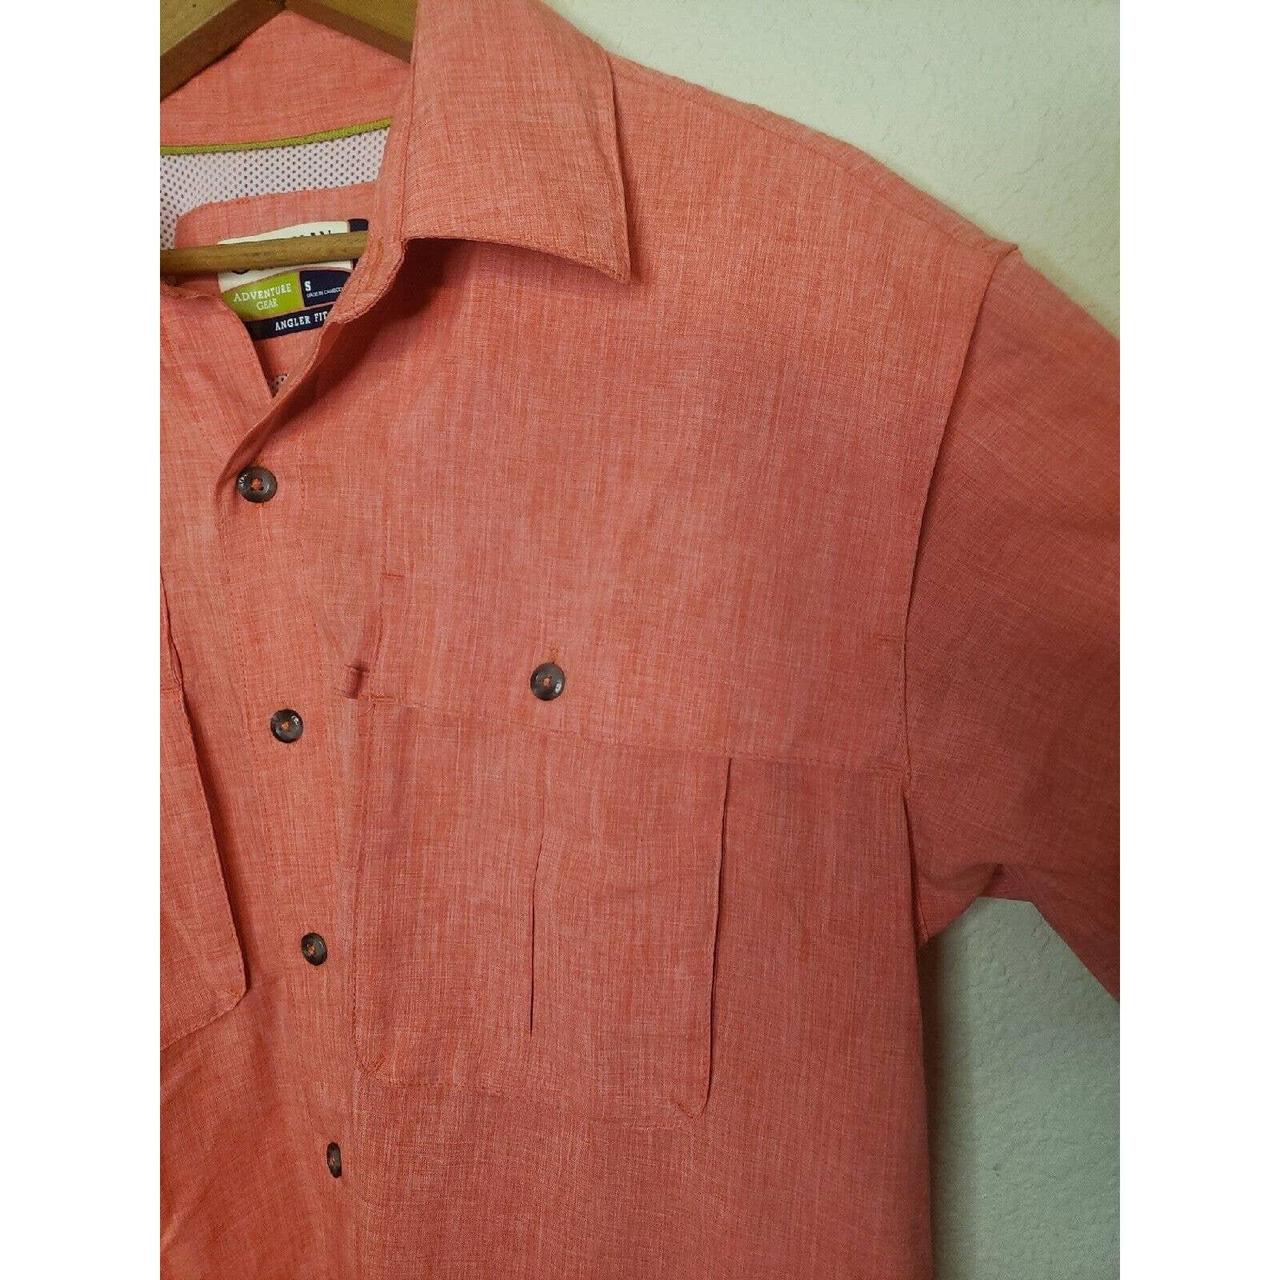 Pink Magellan Outdoors fishing shirt. This preloved - Depop